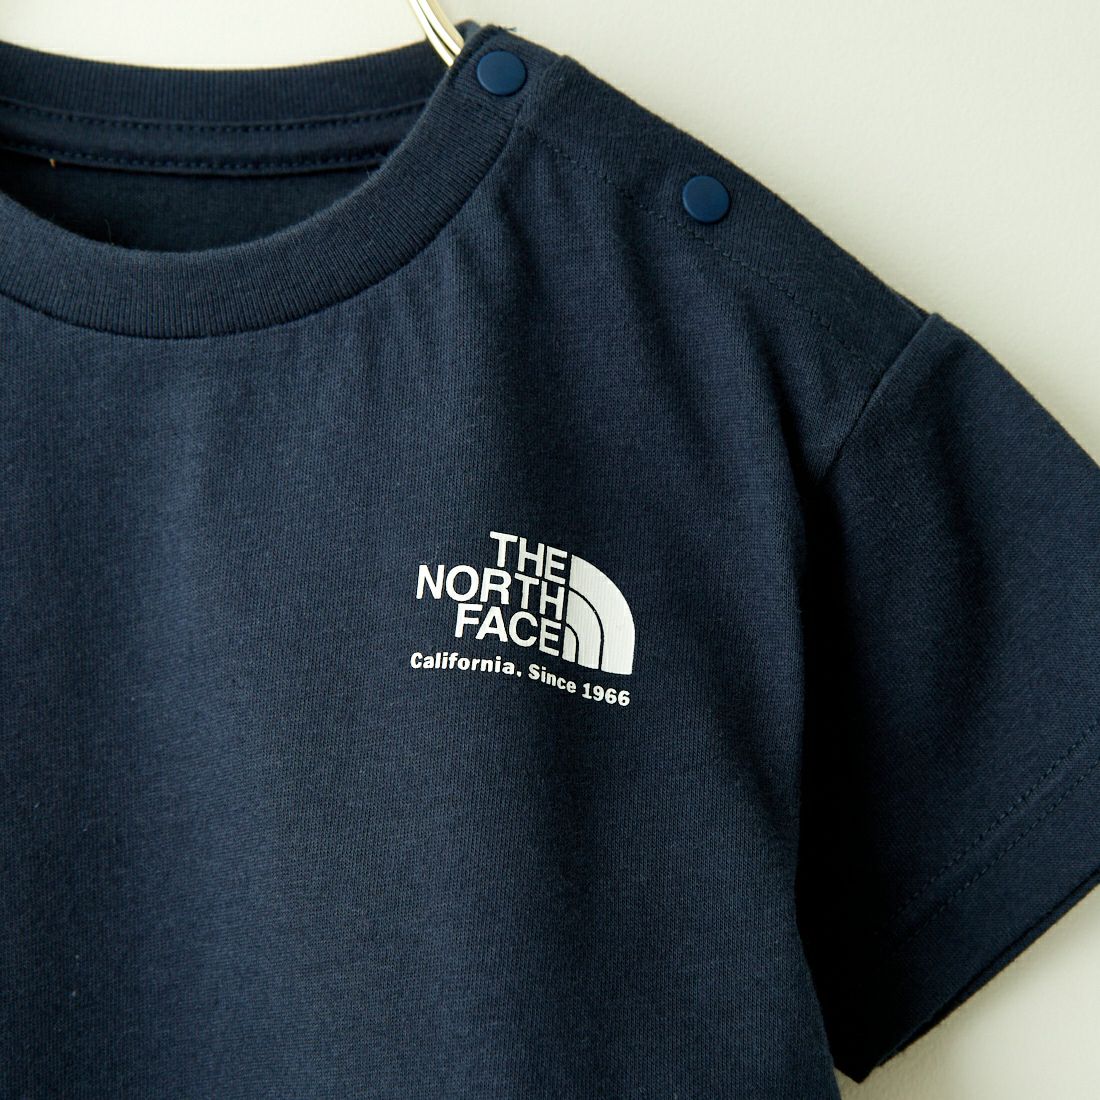 THE NORTH FACE [ザ ノースフェイス] ショートスリーブヒストリカルロゴTシャツ [NTB32356] UN